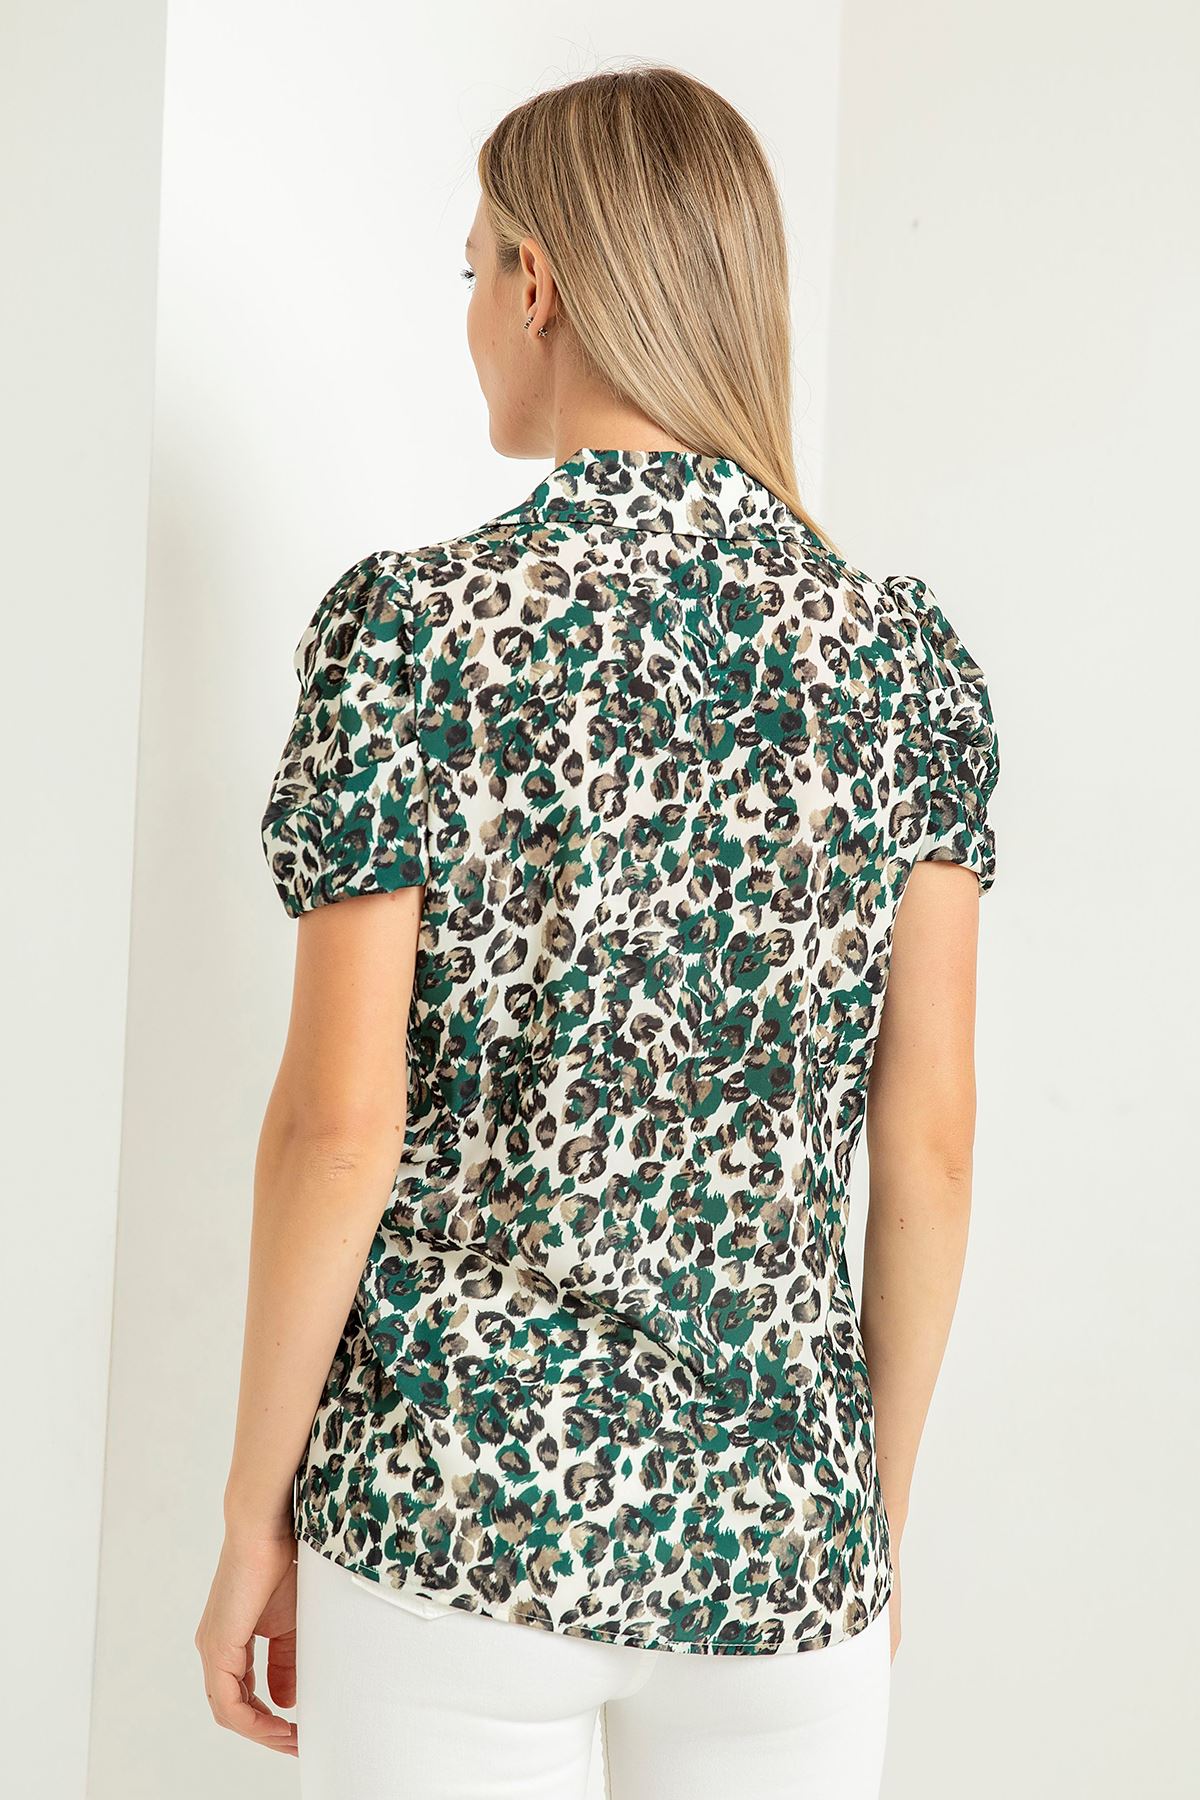 Jesica Fabric Short Sleeve Hip Height Leopard Print Women'S Shirt - Green